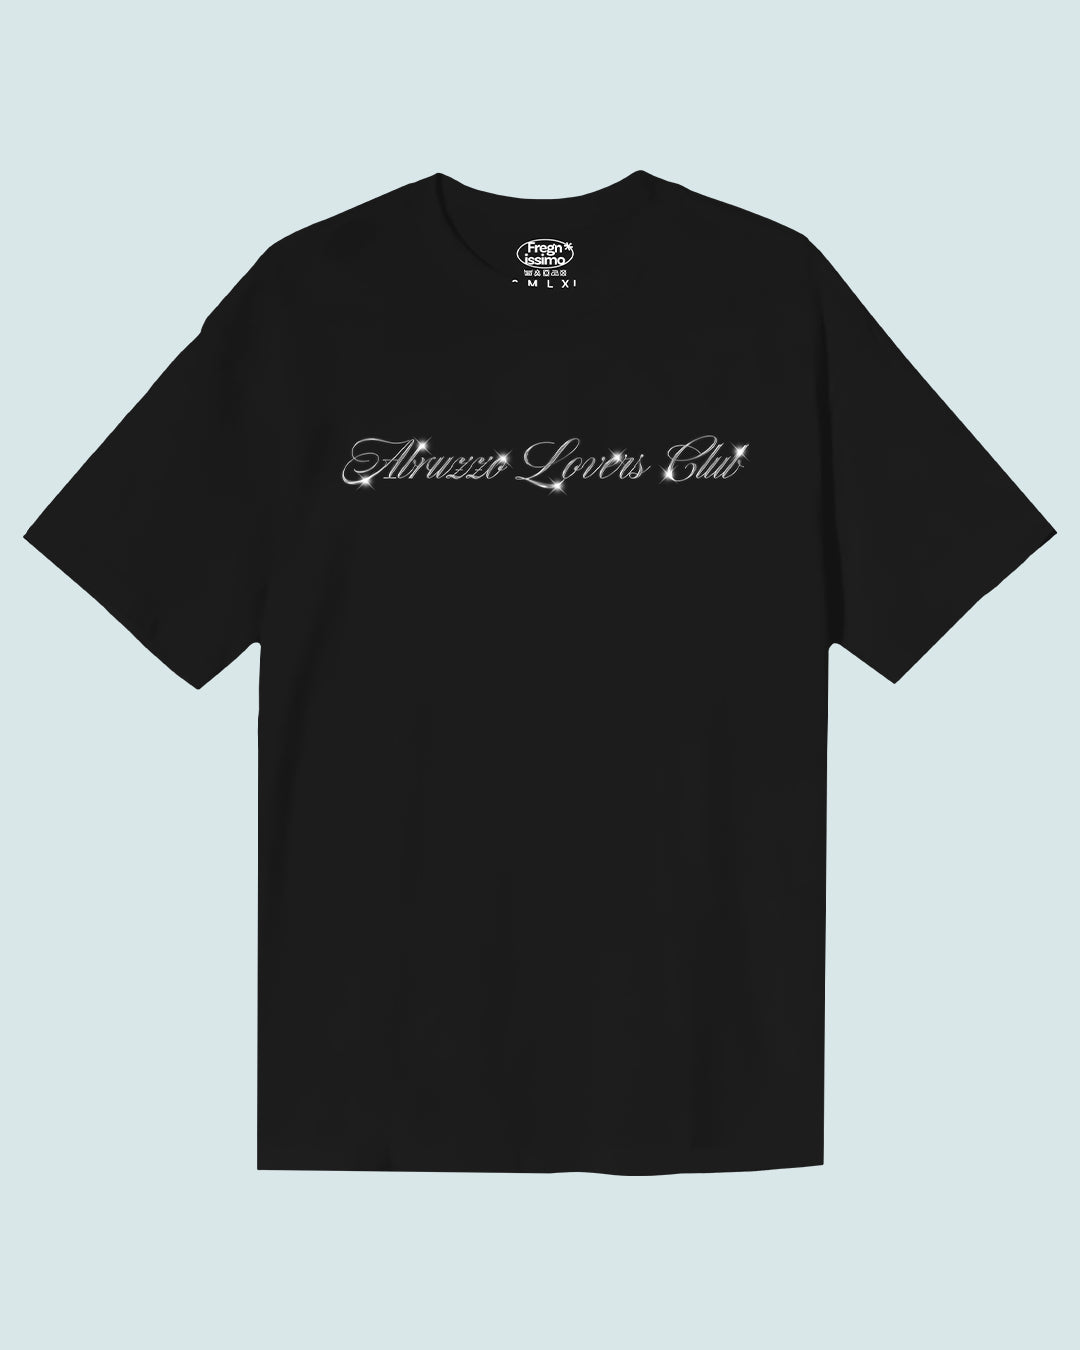 T-shirt Unisex - TERAMO - ABRUZZO LOVERS CLUB